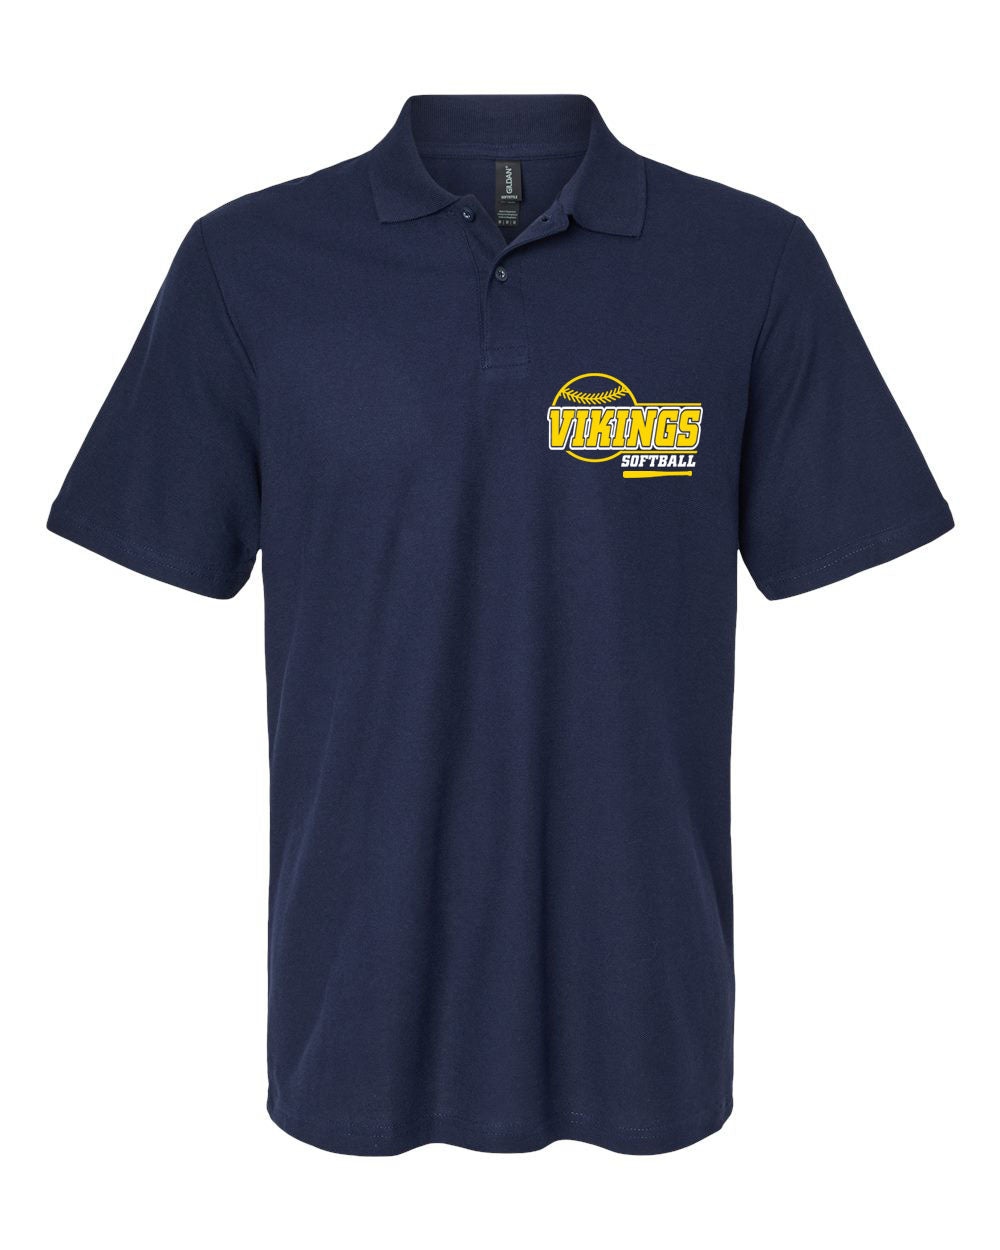 Vernon Softball Design 1 Polo T-Shirt